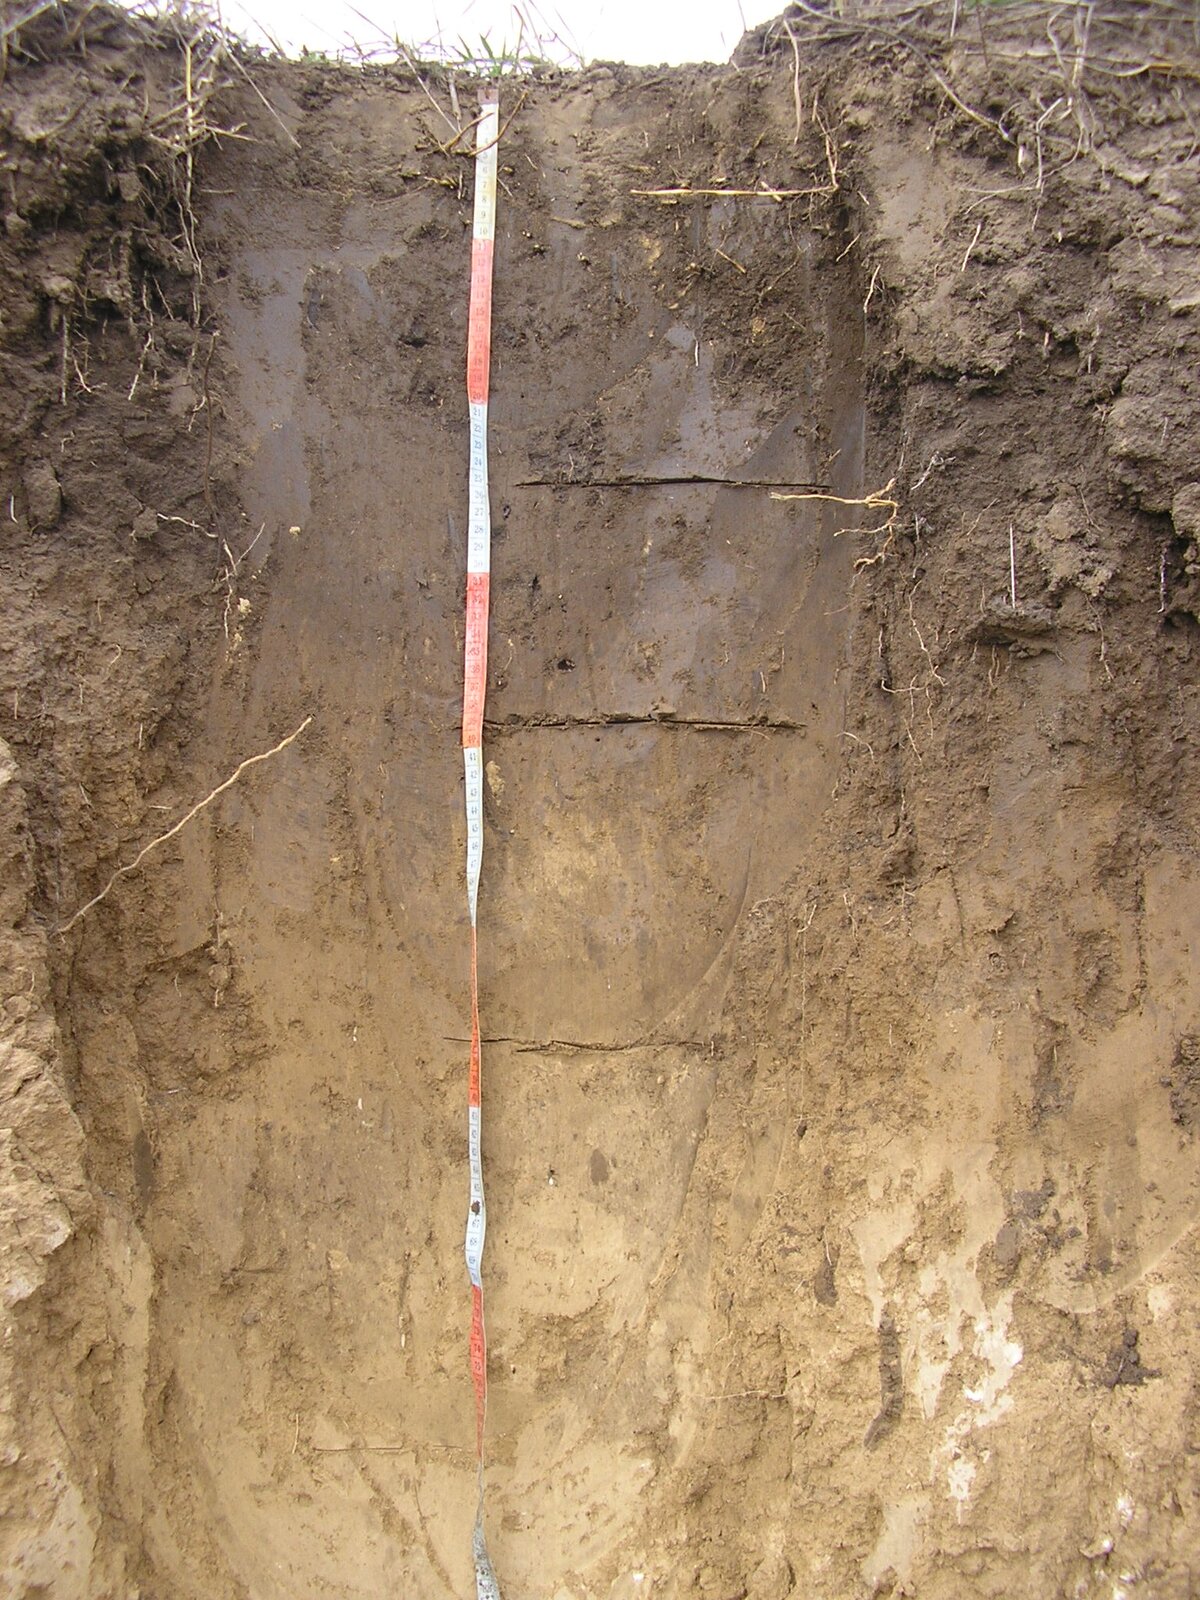 Zdjęcie ukazuje profil gleby. Bliżej powierzchni gleba ma kolor ciemnobrązowy. Od około 40 centymetrów poniżej powierzchni jaśnieje. 